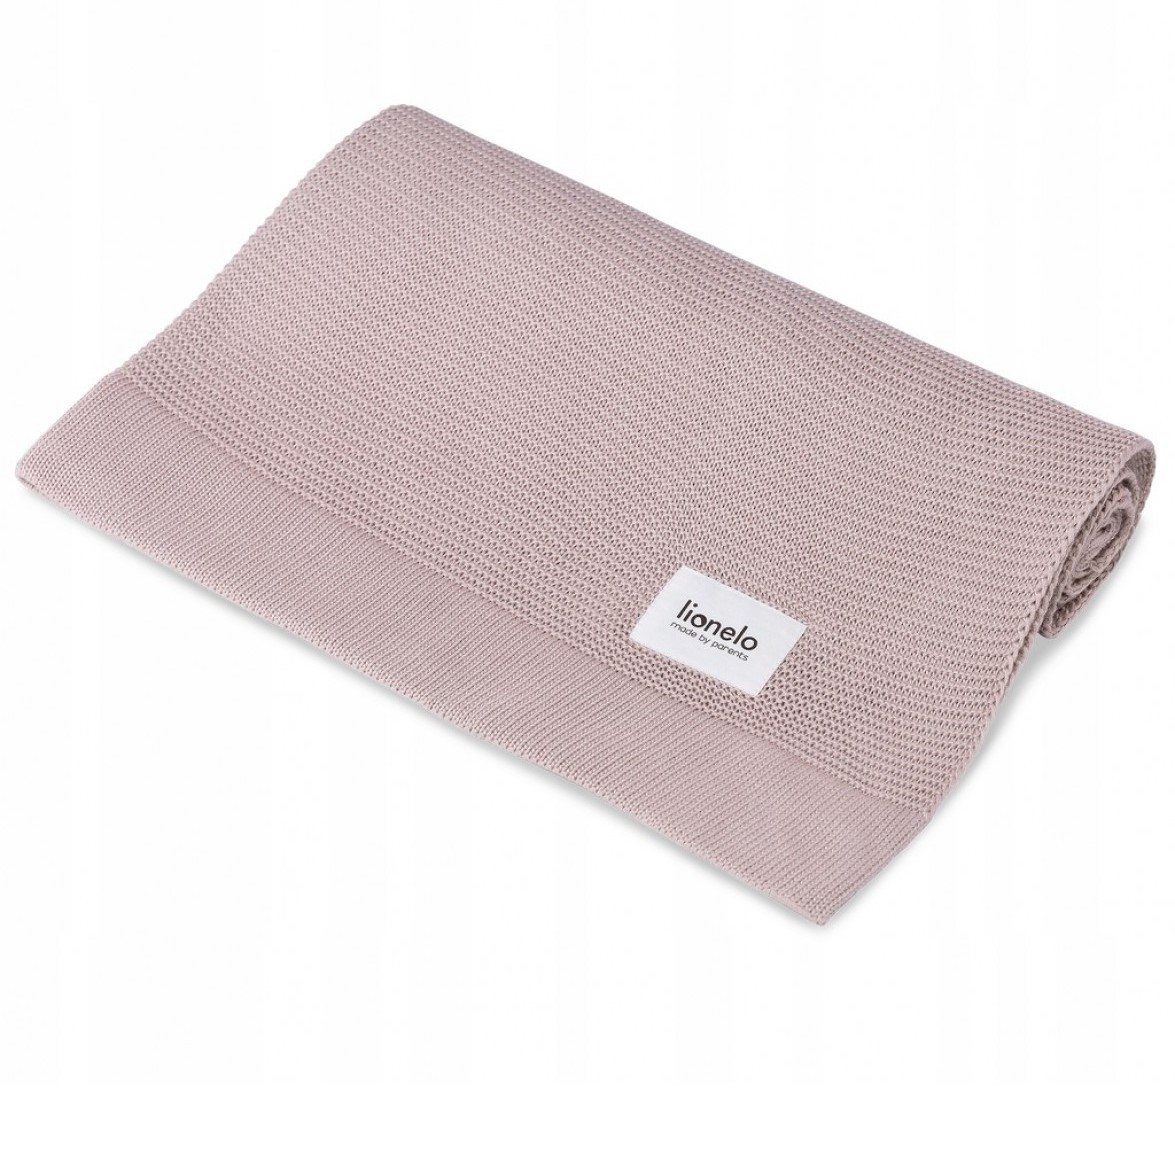 Одеяло Lionelo Bamboo Blanket Pink, 100х75 см, розовое (LO-BAMBOO BLANKET PINK) - фото 1